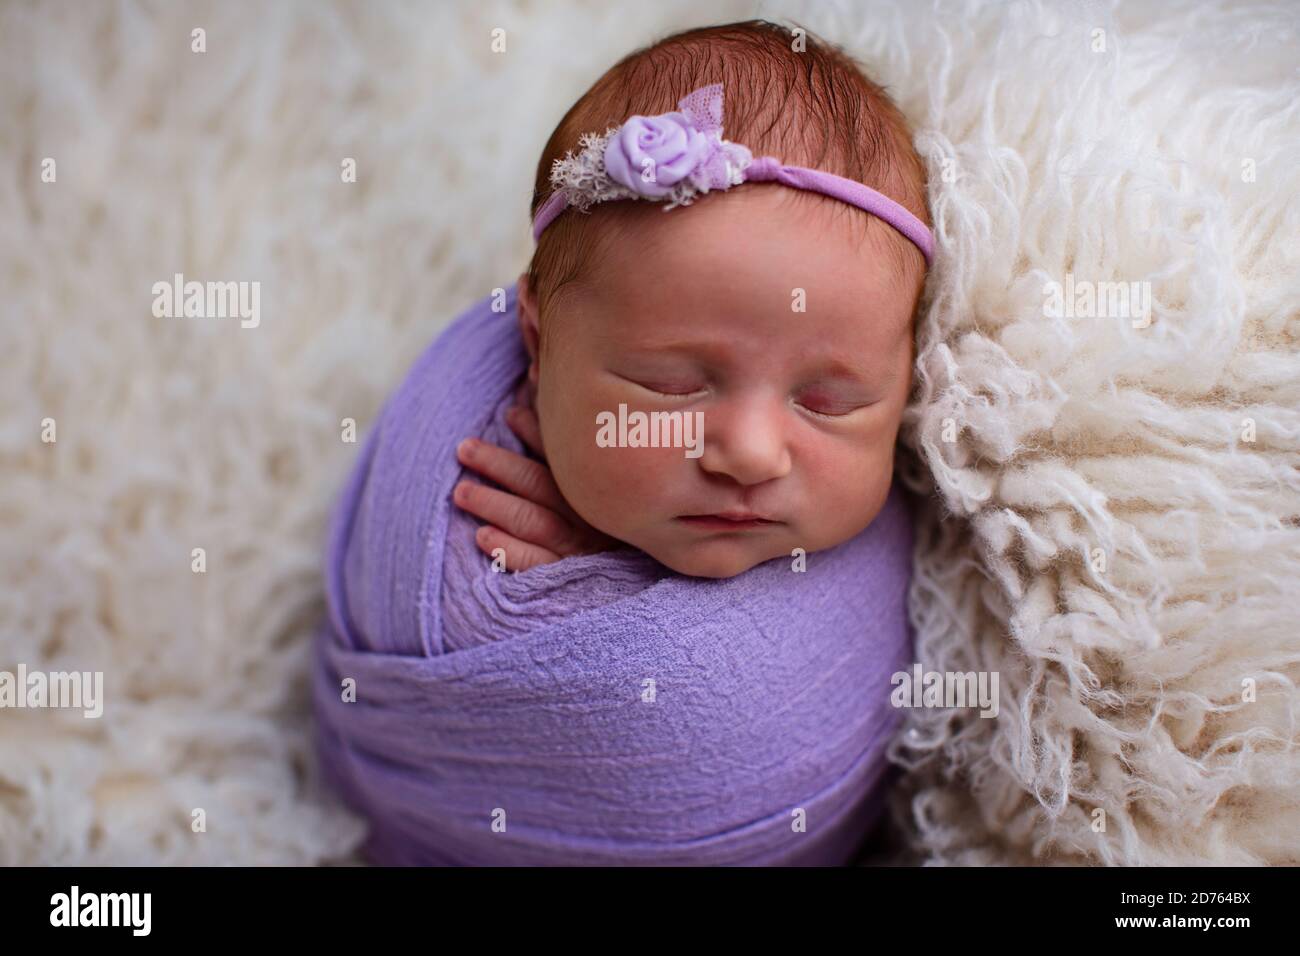 Dormant, bébé fille de sept jours de nouveau-né a emailé dans un emballage violet. Tourné en studio sur un tapis en peau de mouton blanc Banque D'Images